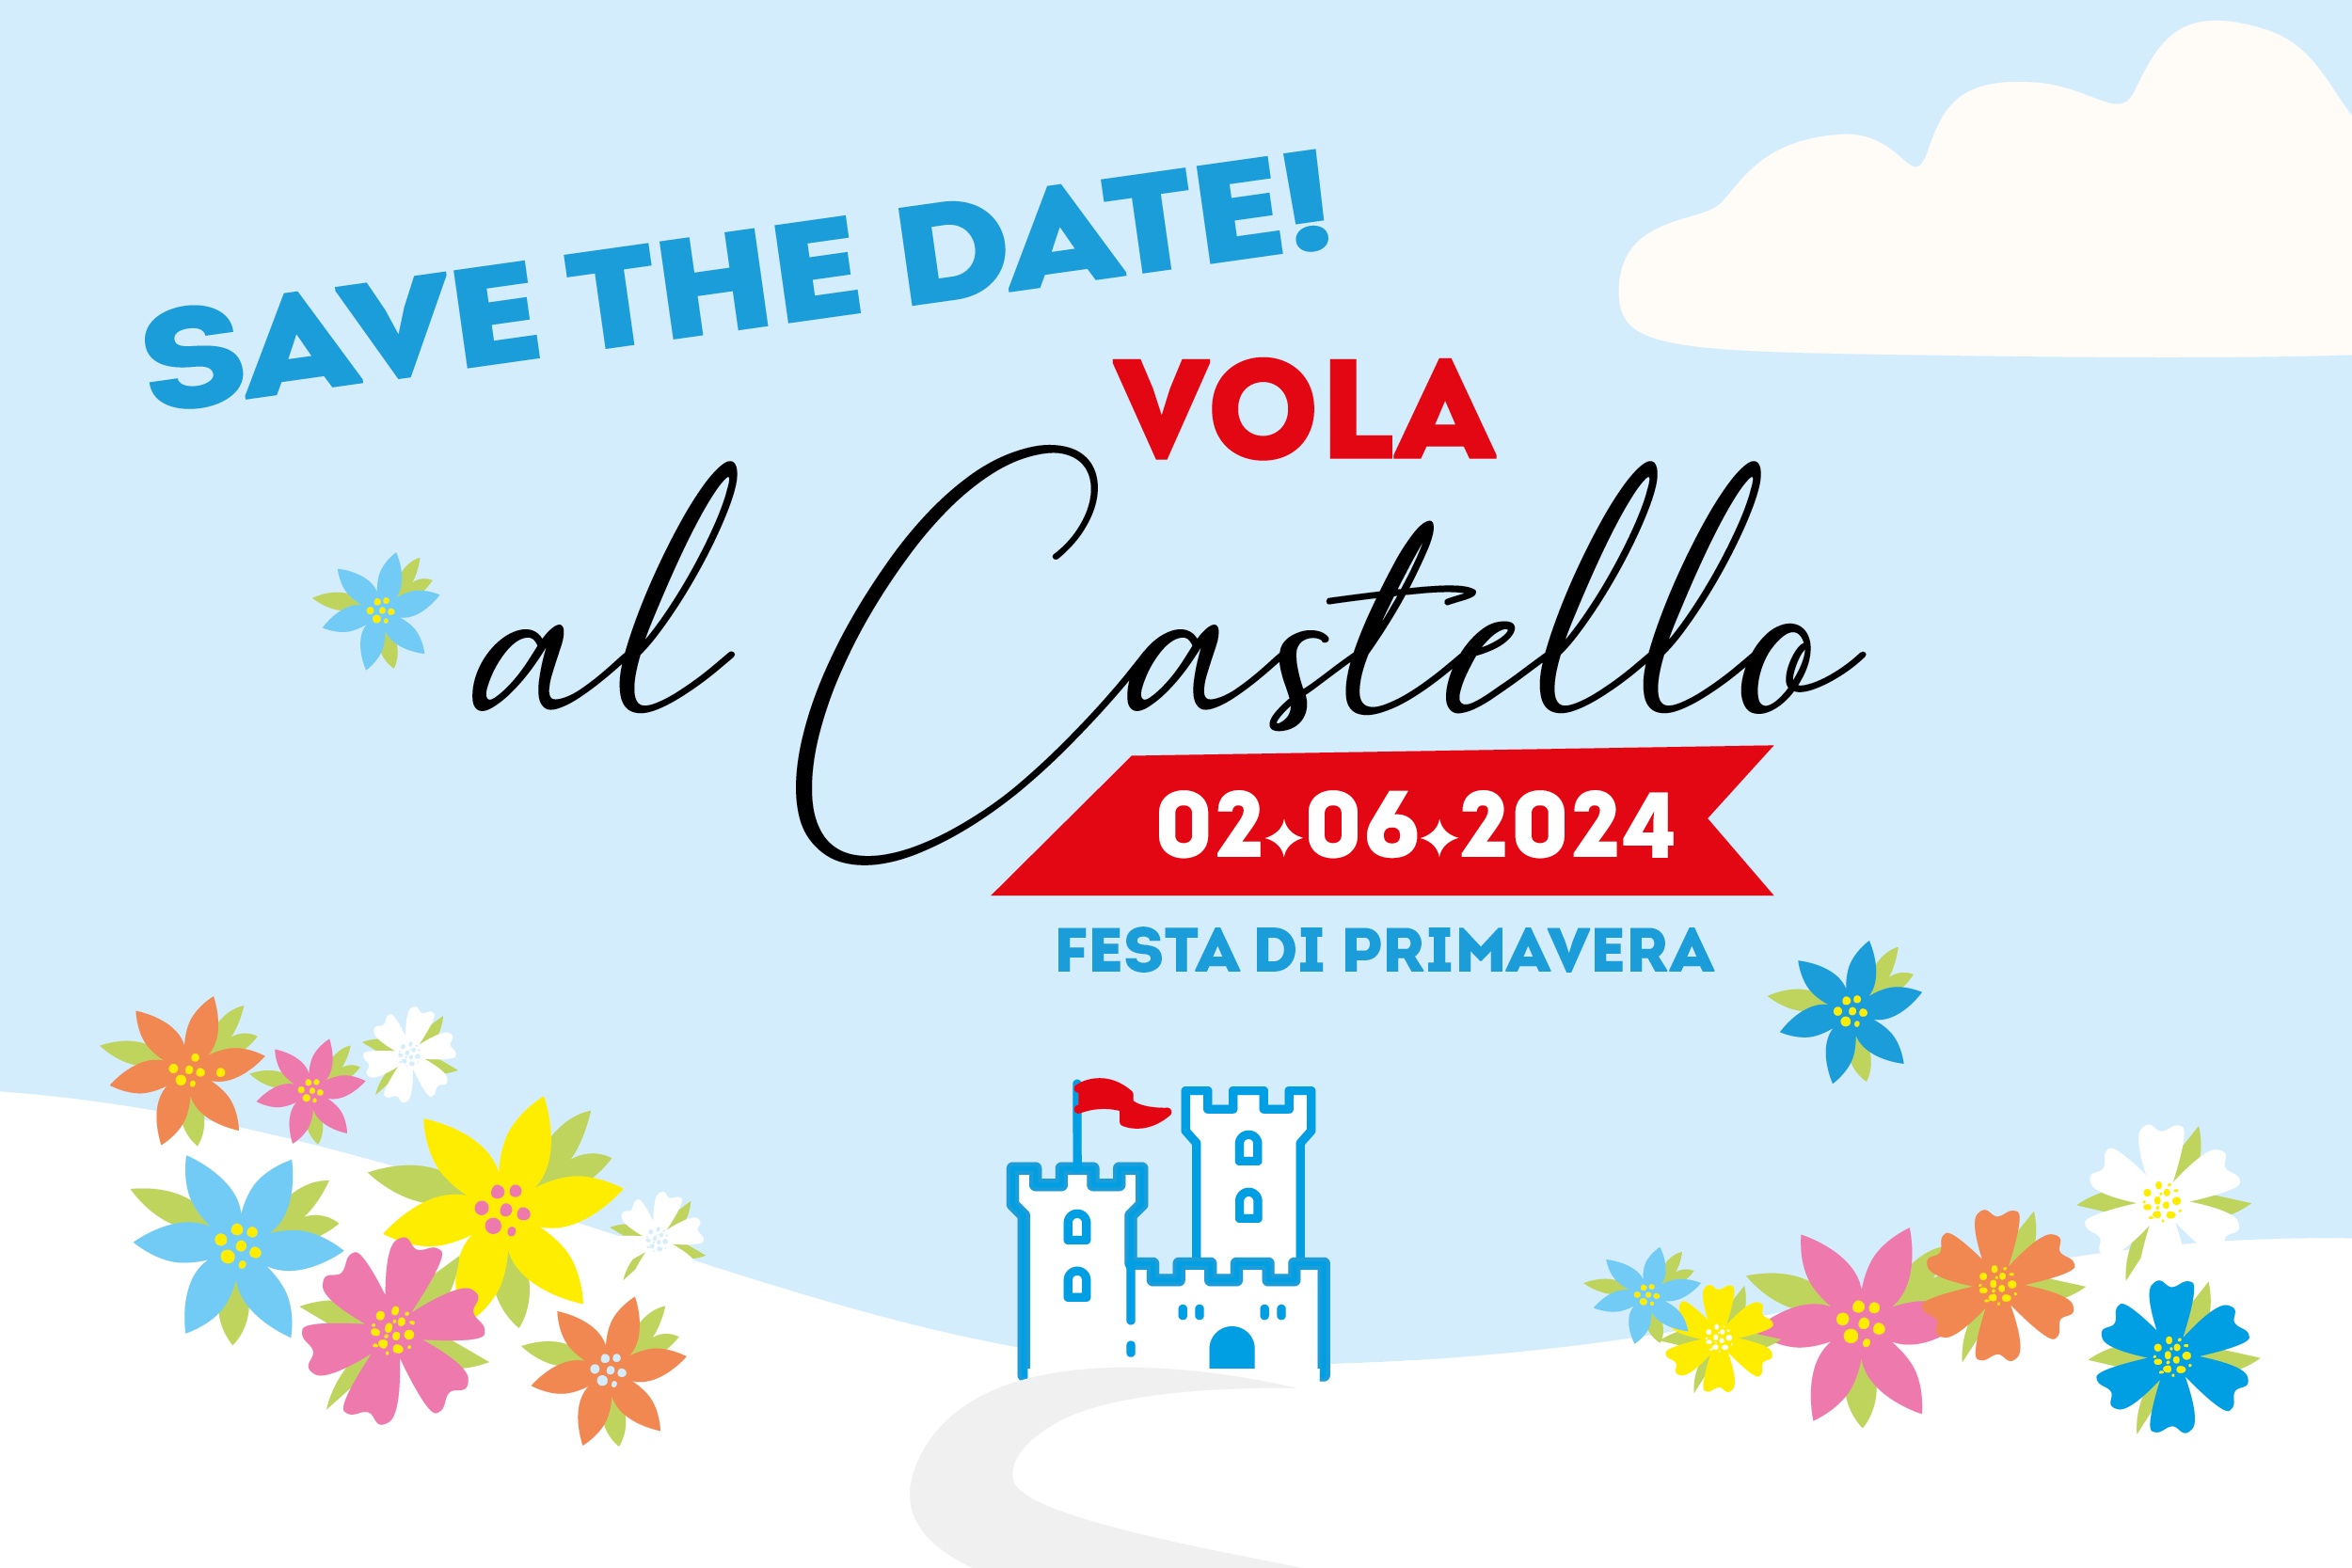 Salve the date Festa di Primavera Vola al Castello